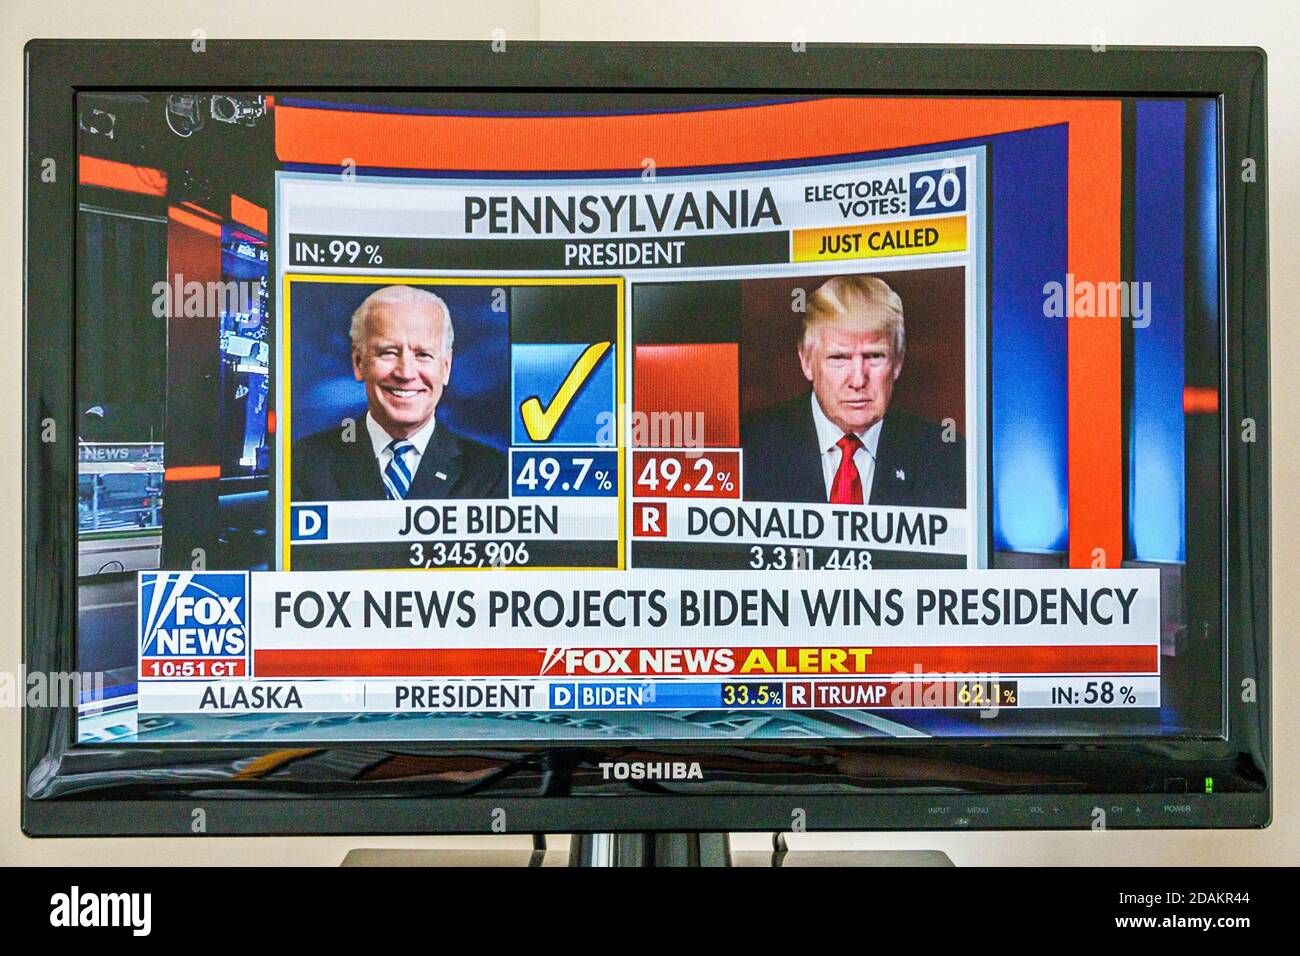 TV câble télévision écran moniteur 2020 des résultats des élections présidentielles américaines, Joe Biden Donald Trump votes populaire du collège électoral nombre de votes populaires, Fox News pr Banque D'Images